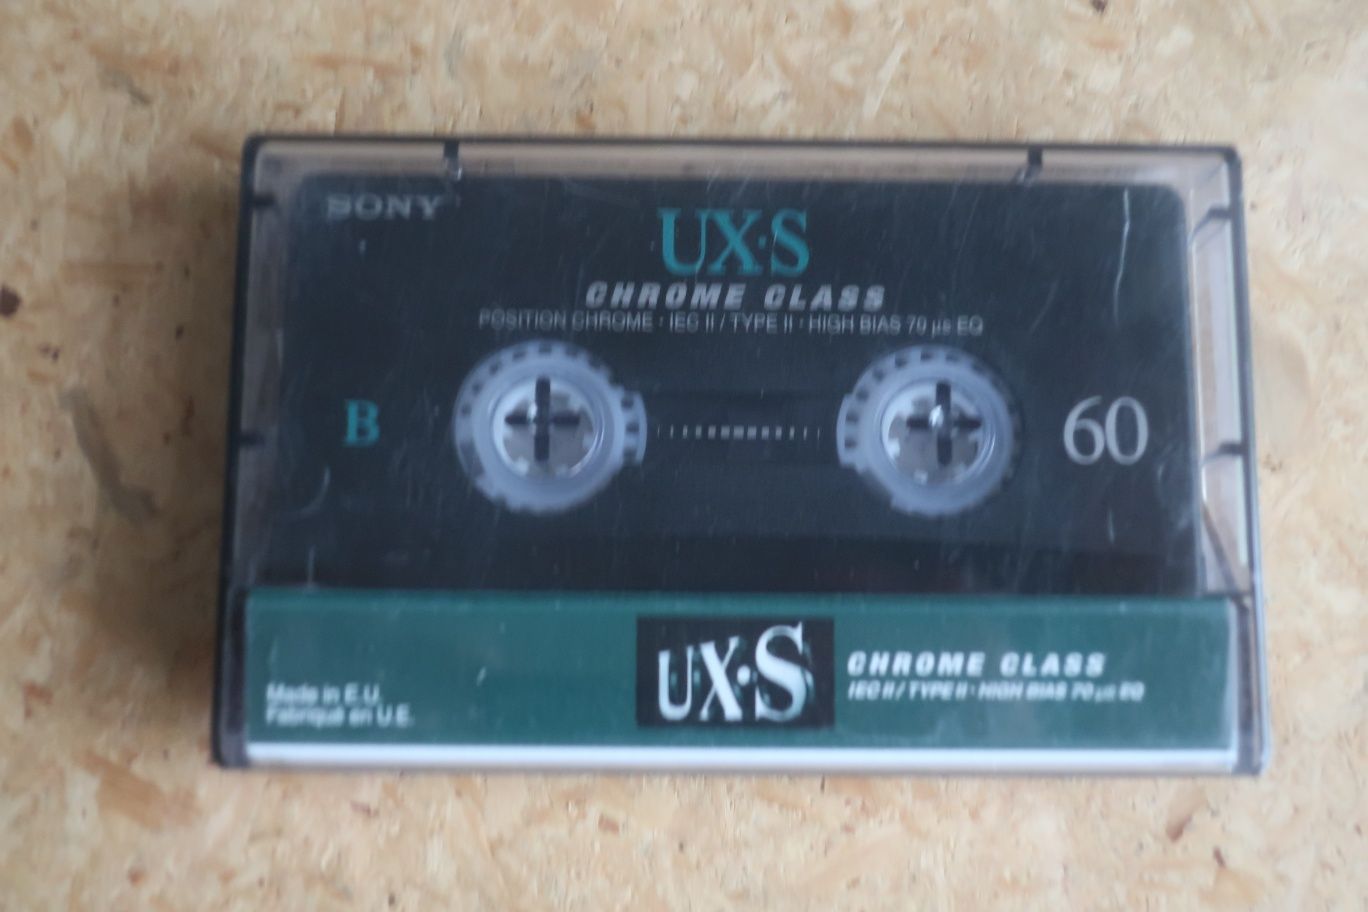 Cassete de aúdio Sony UX-S Chrome Class 60